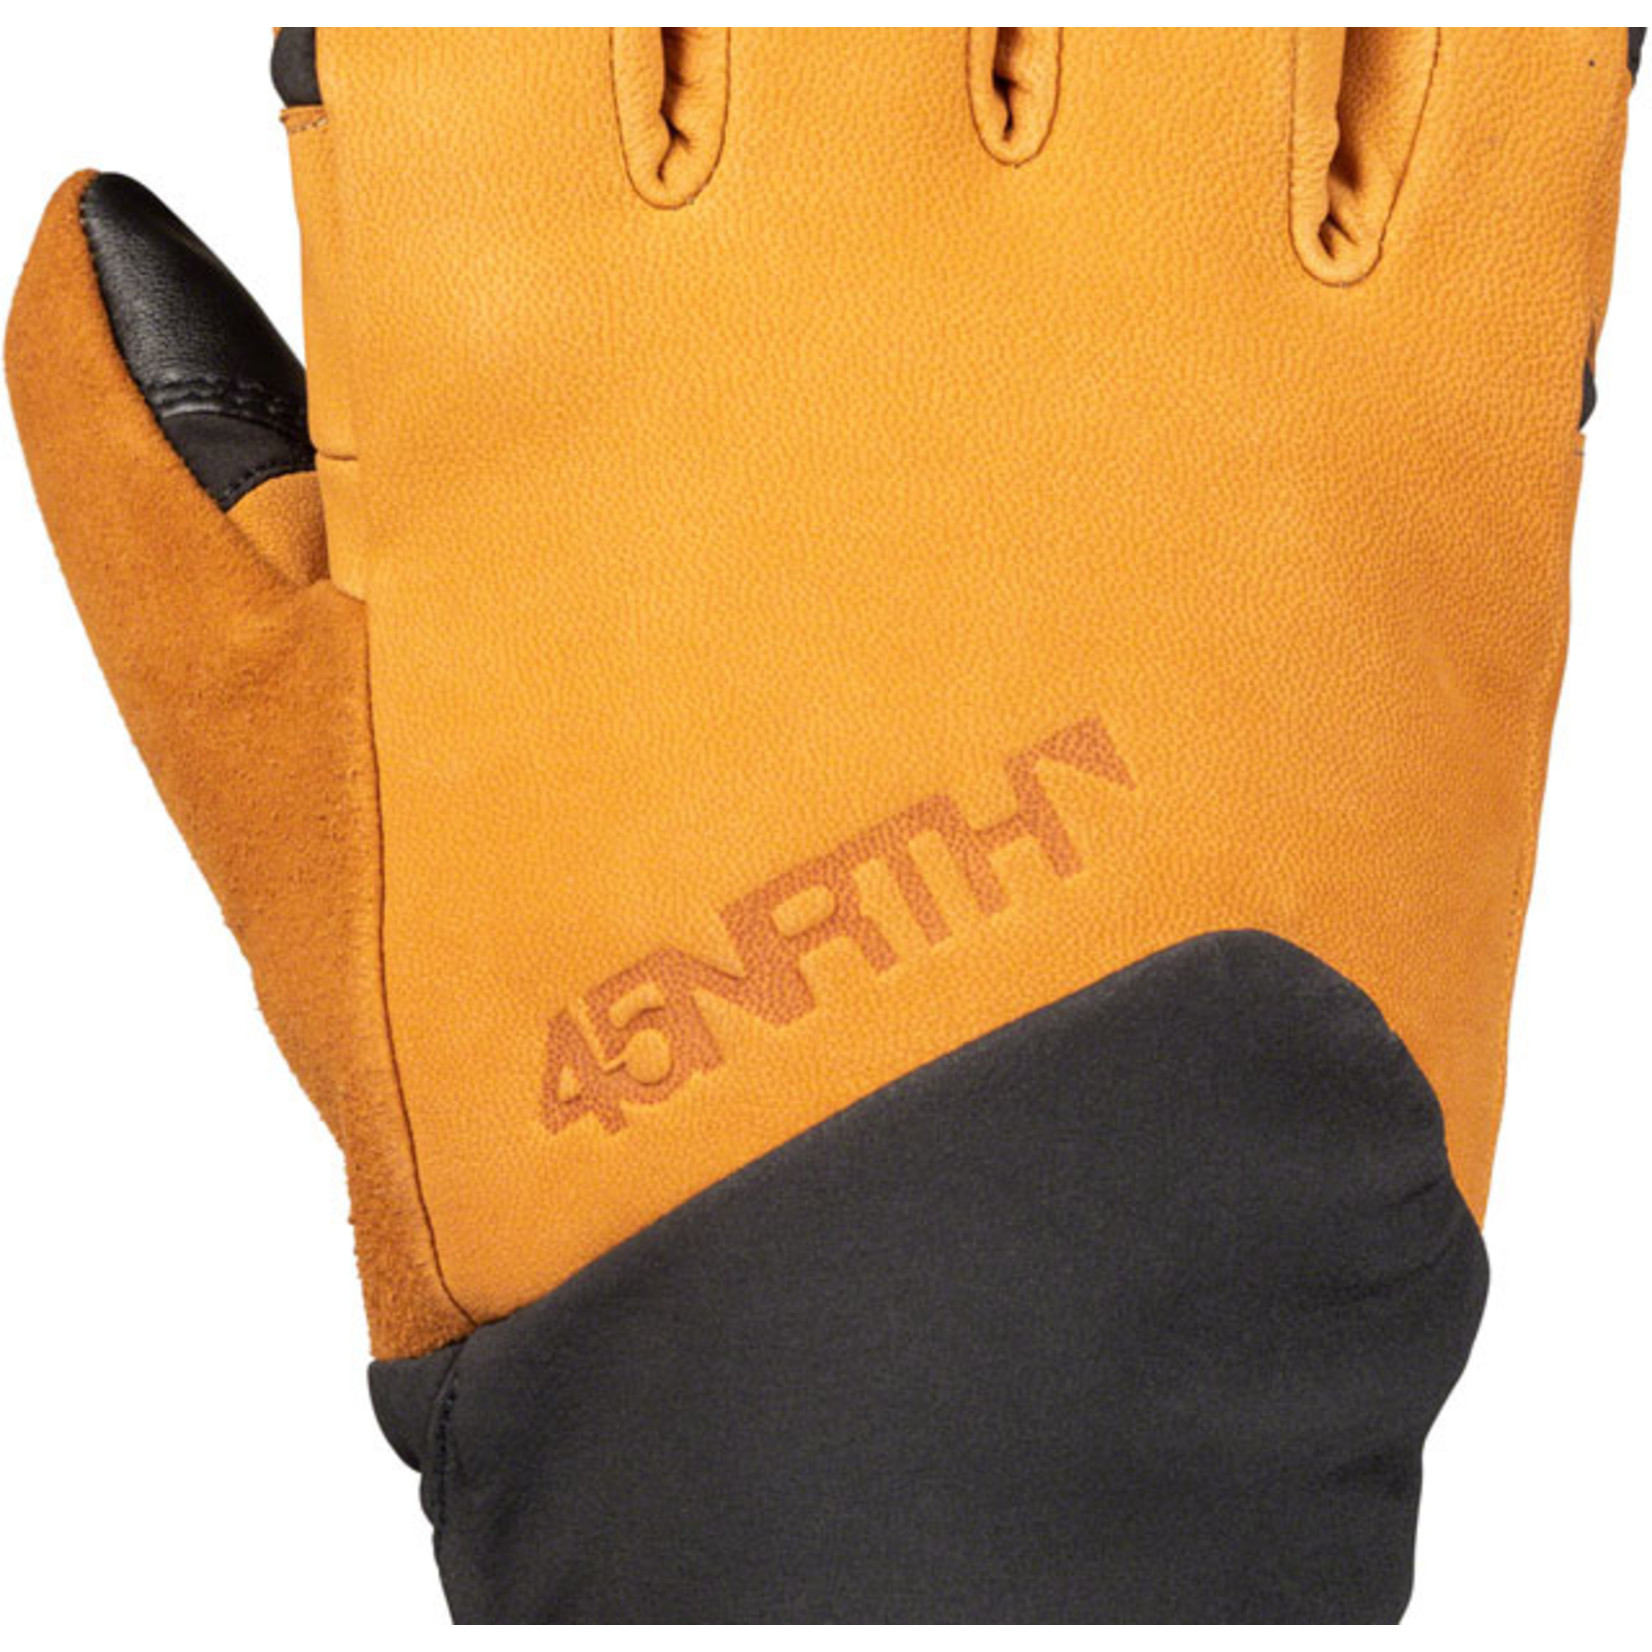 45NRTH 45NRTH Sturmfist 5 LTR Leather Glove - Tan/Black Full Finger X-Large